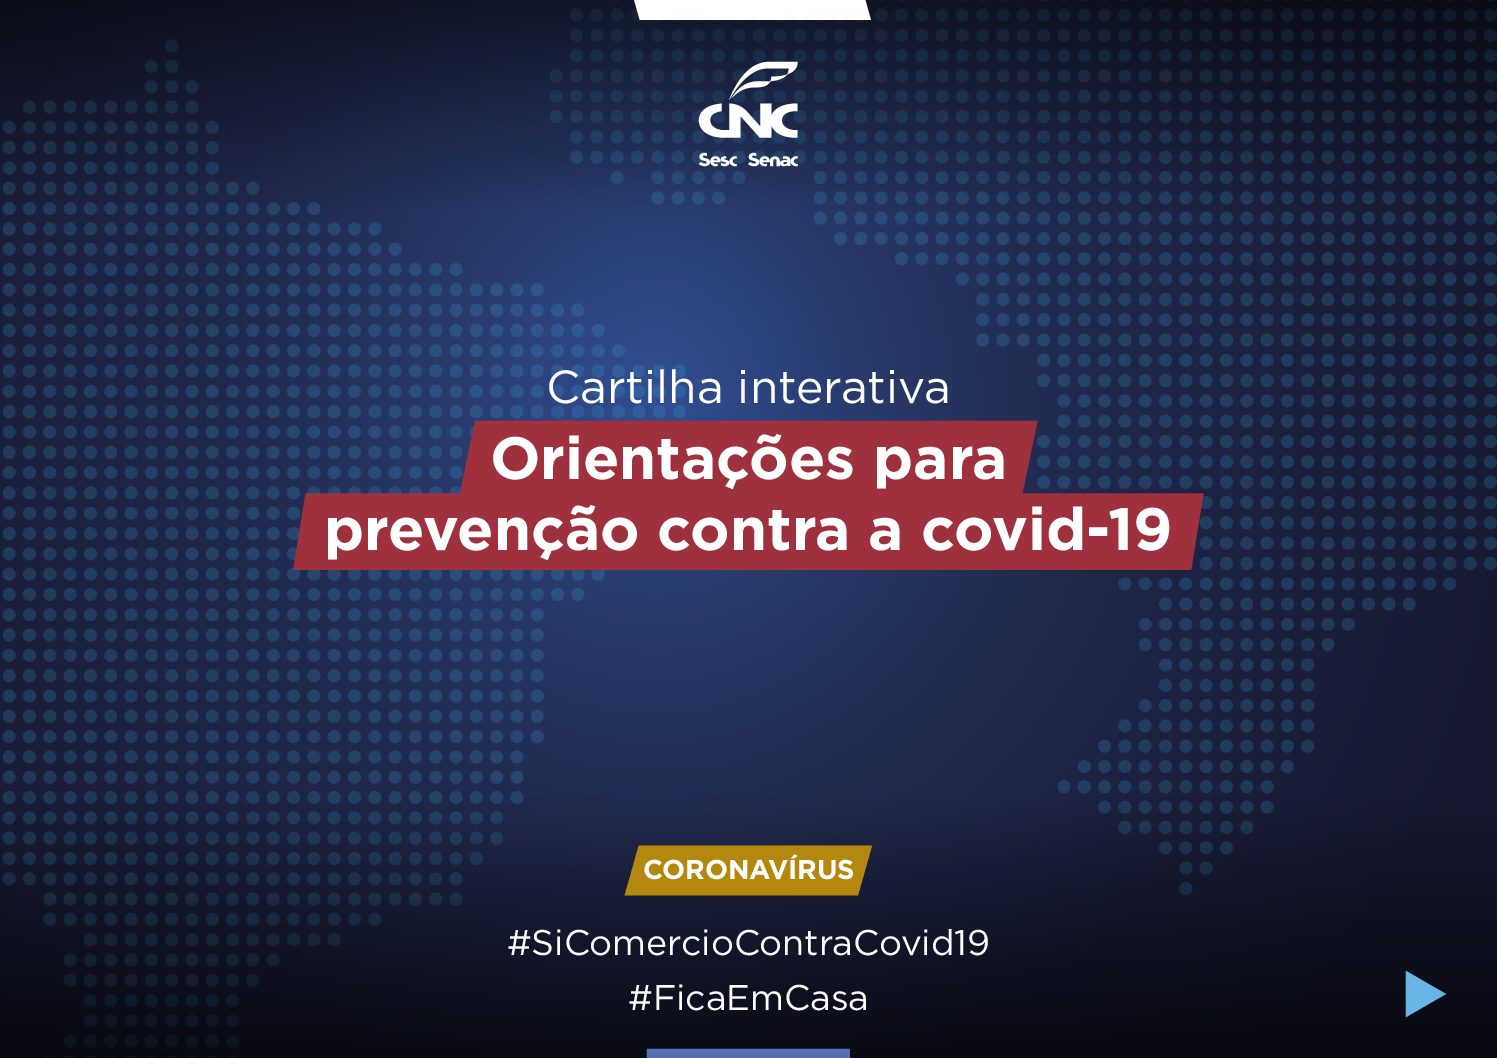 Você está visualizando atualmente Cartilha interativa da CNC orienta sobre prevenção do Coronavírus